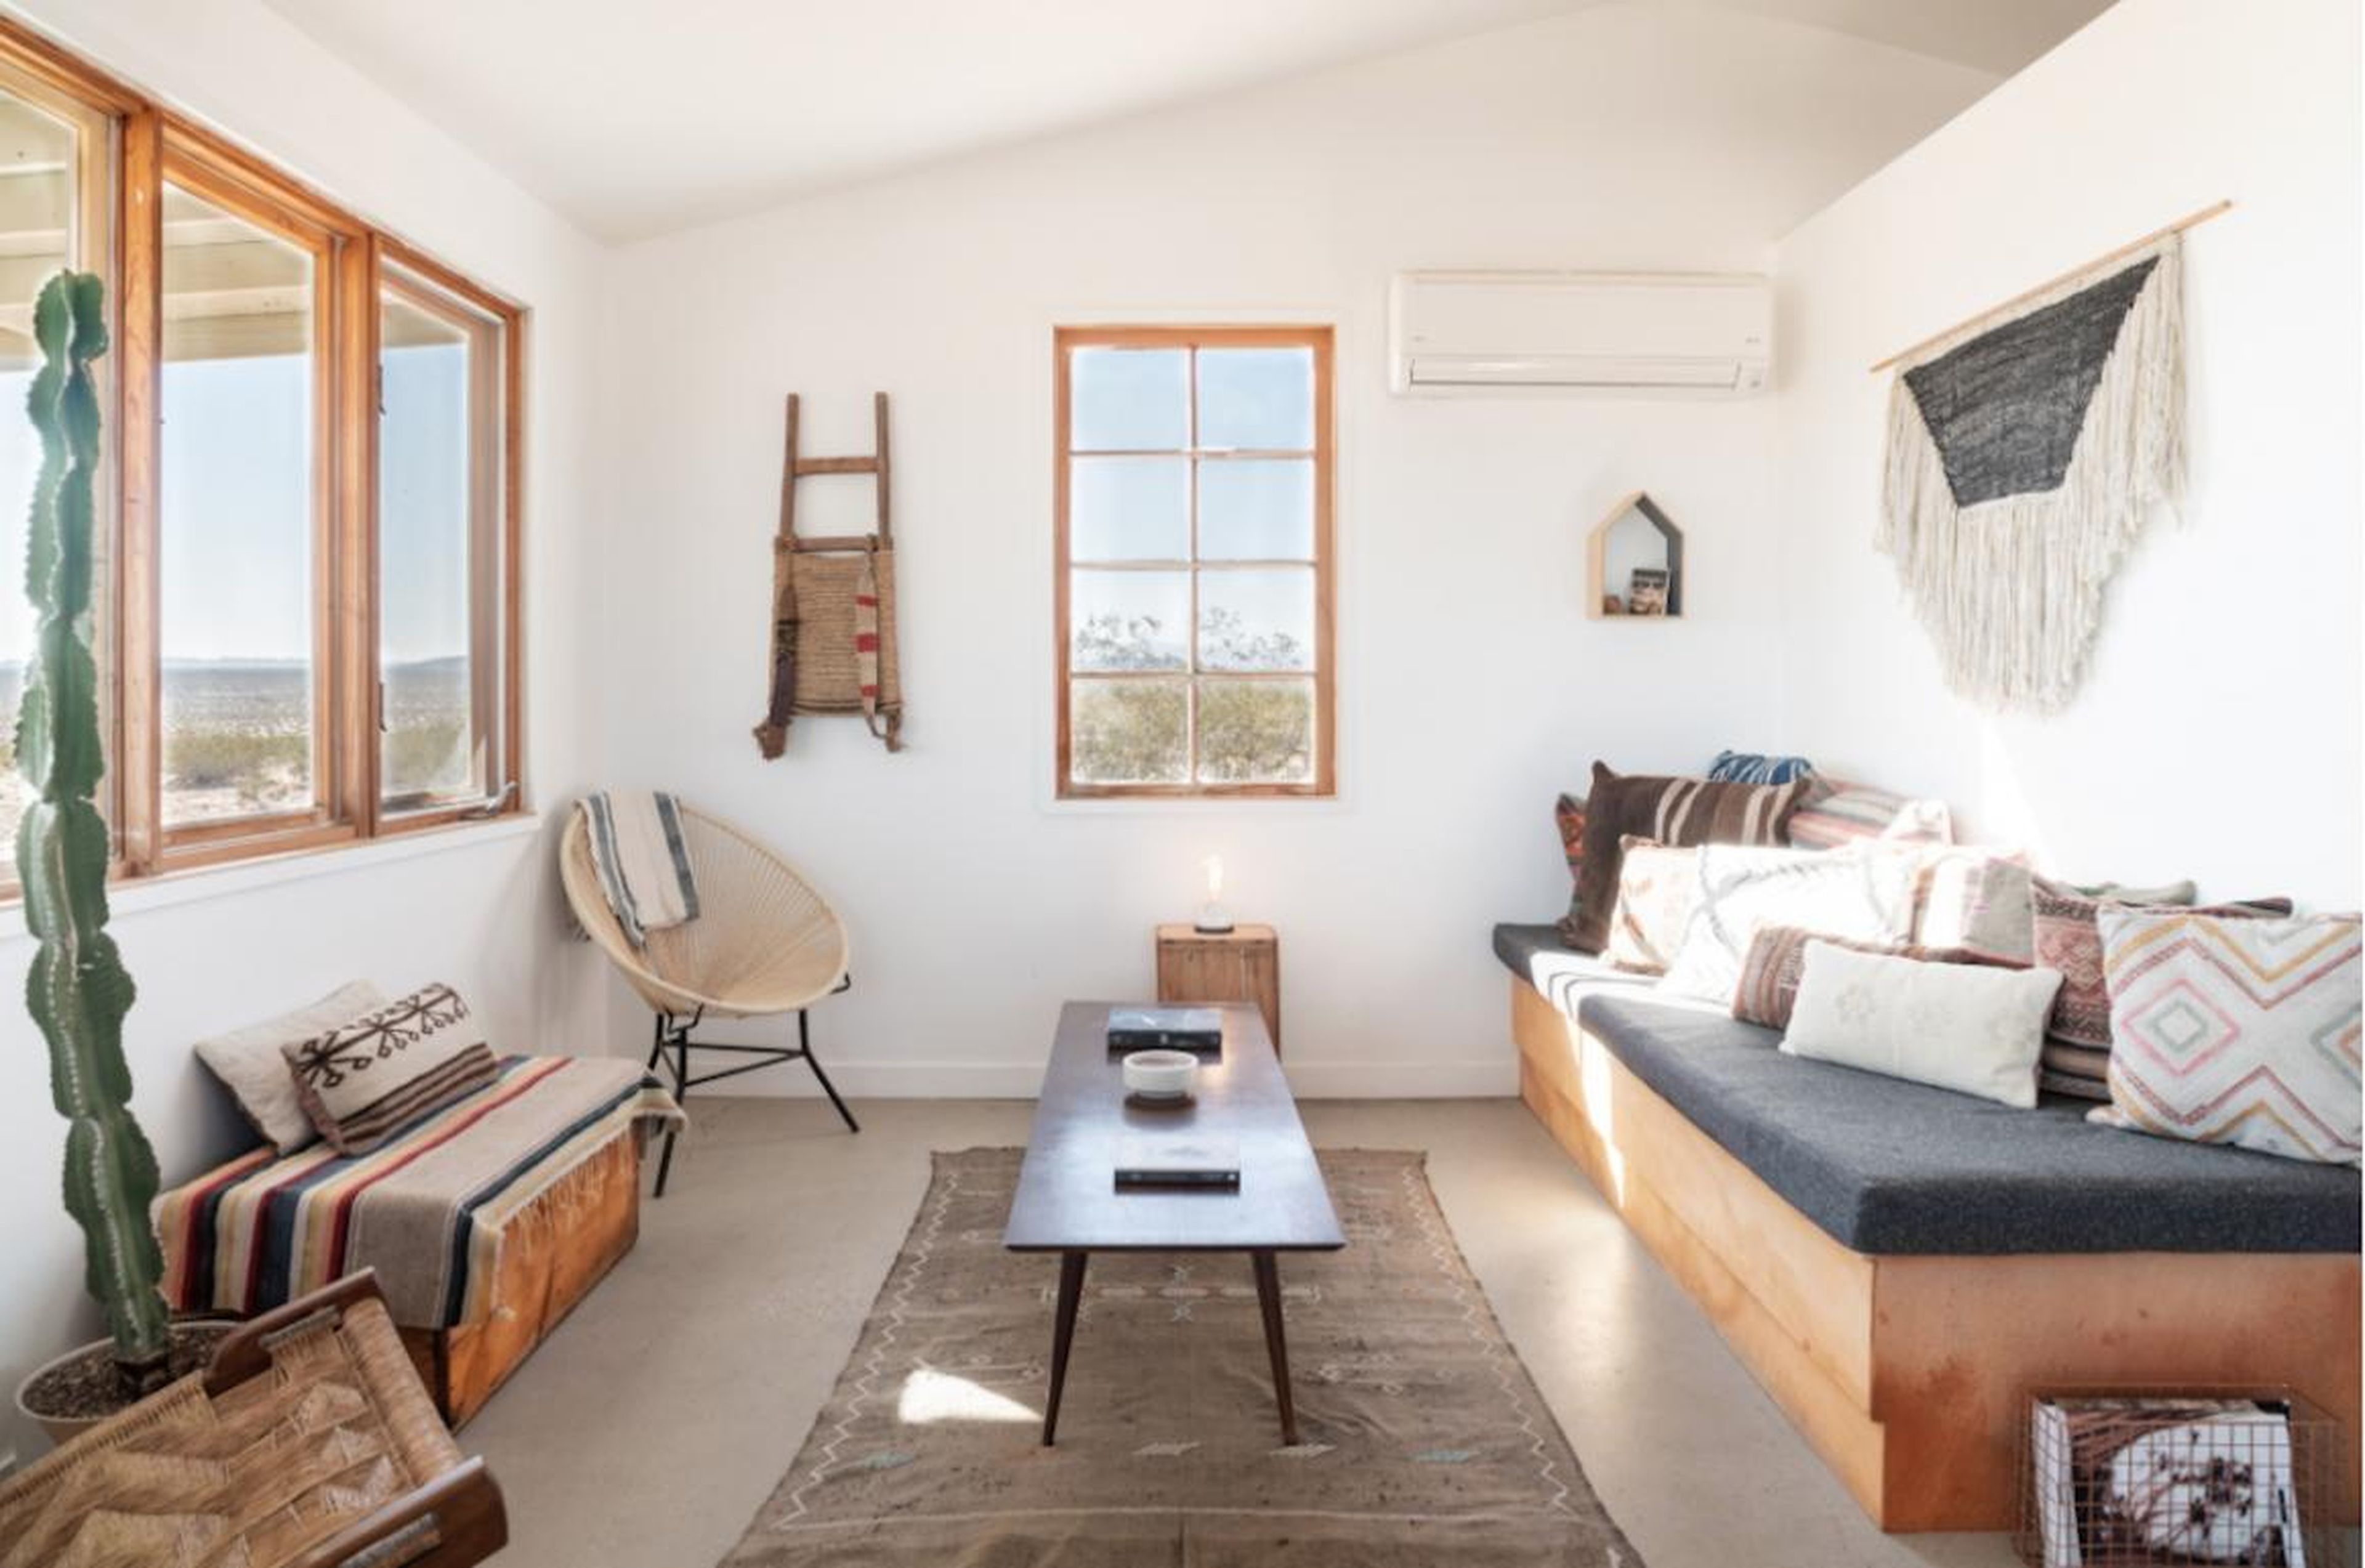 [RE] El interior de la casa de Airbnb incluye toneladas de servicios.